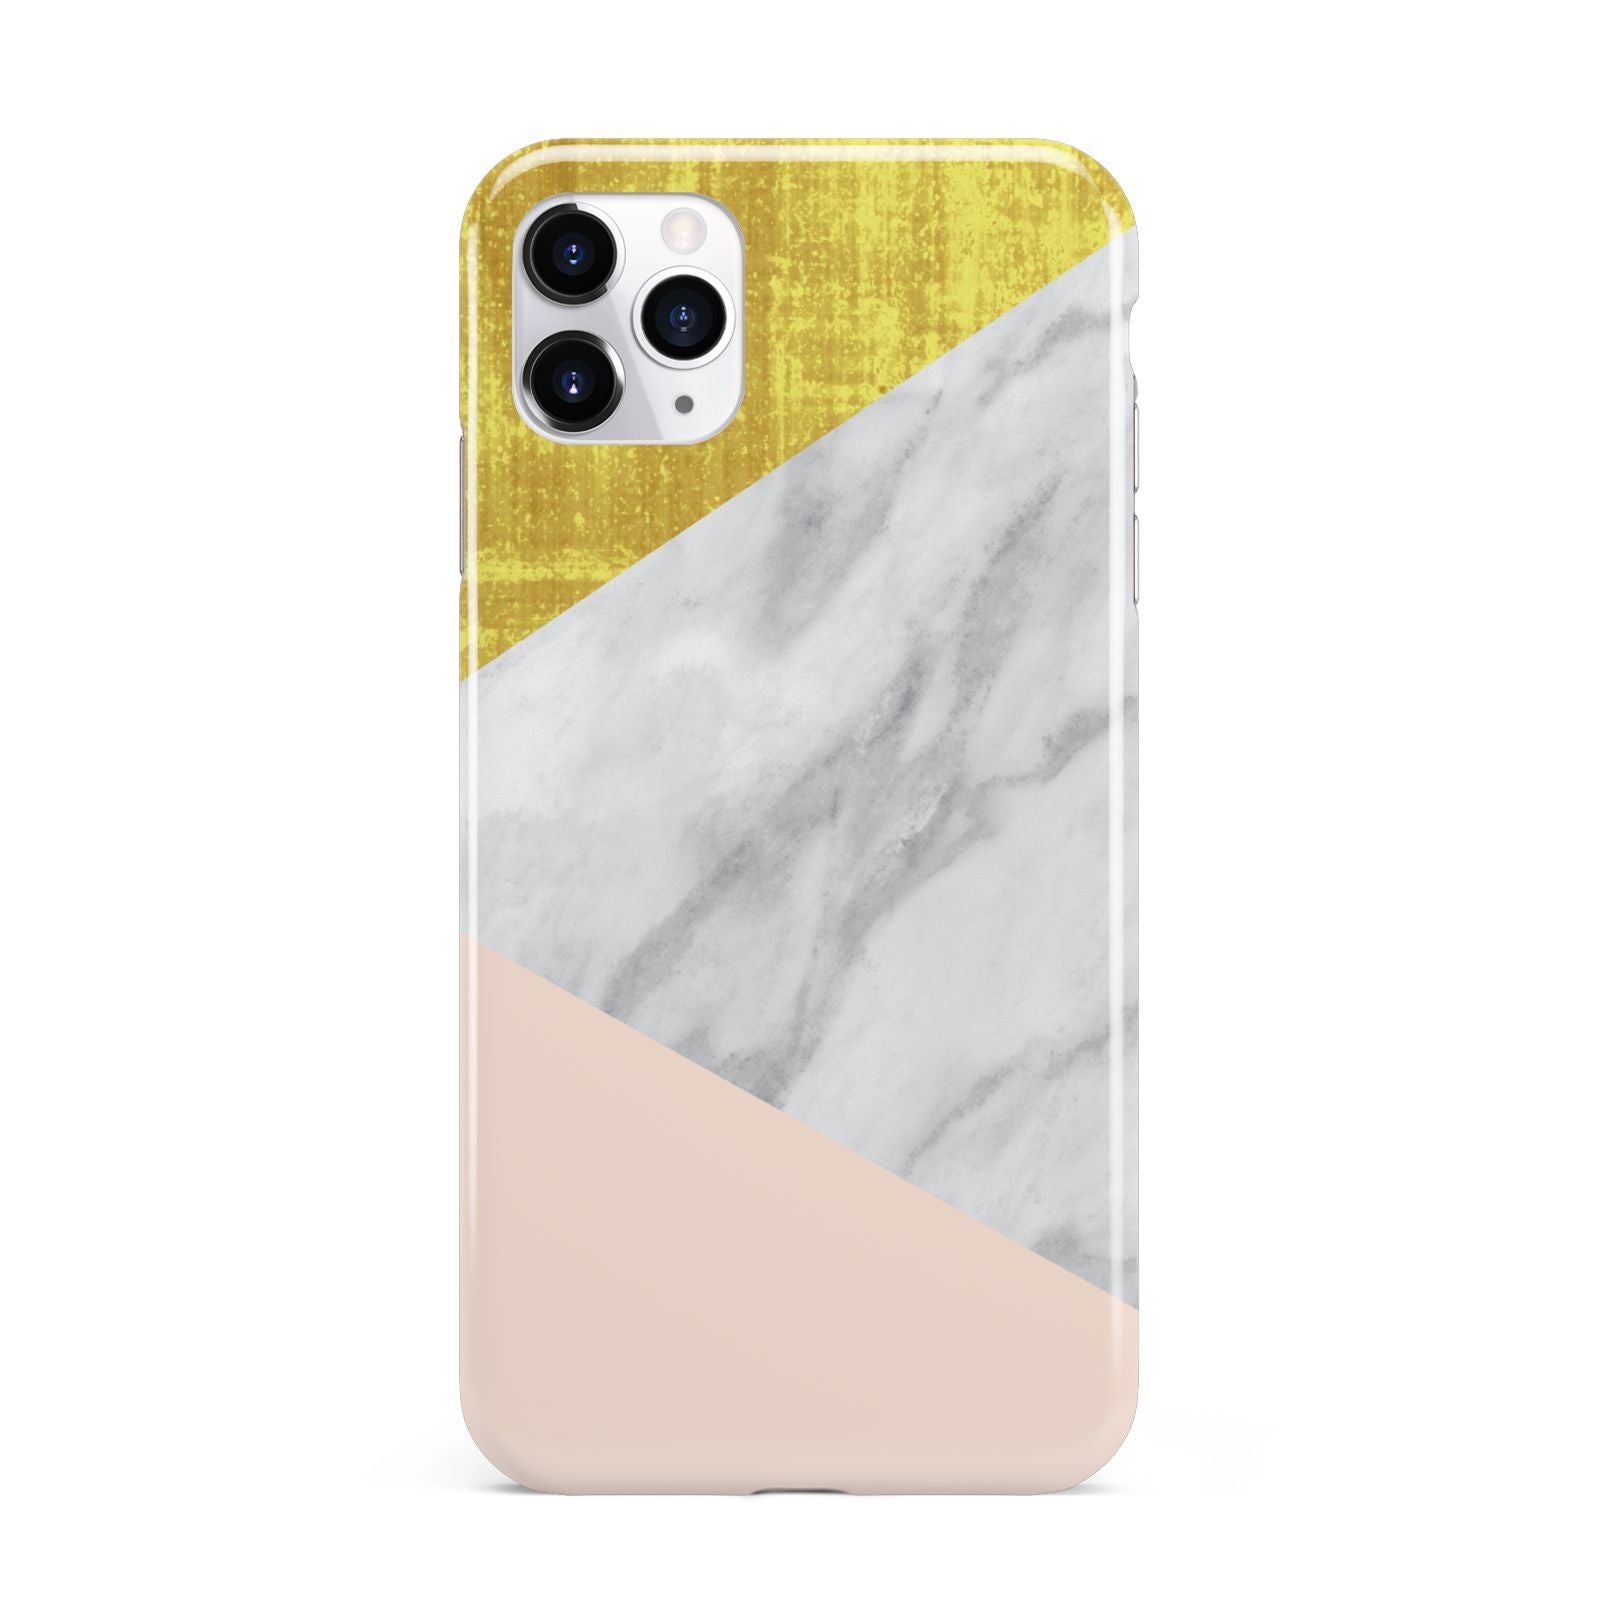 Marble White Gold Foil Peach iPhone 11 Pro Max 3D Tough Case